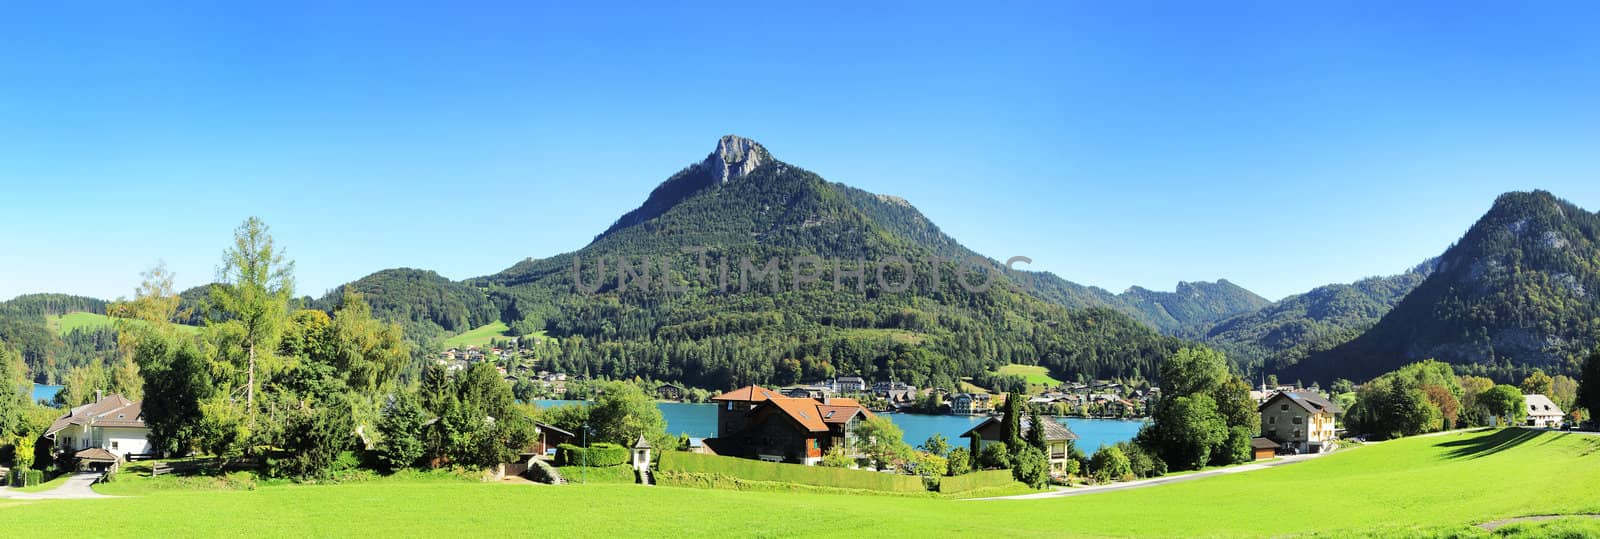 Village in Alps by joyfull